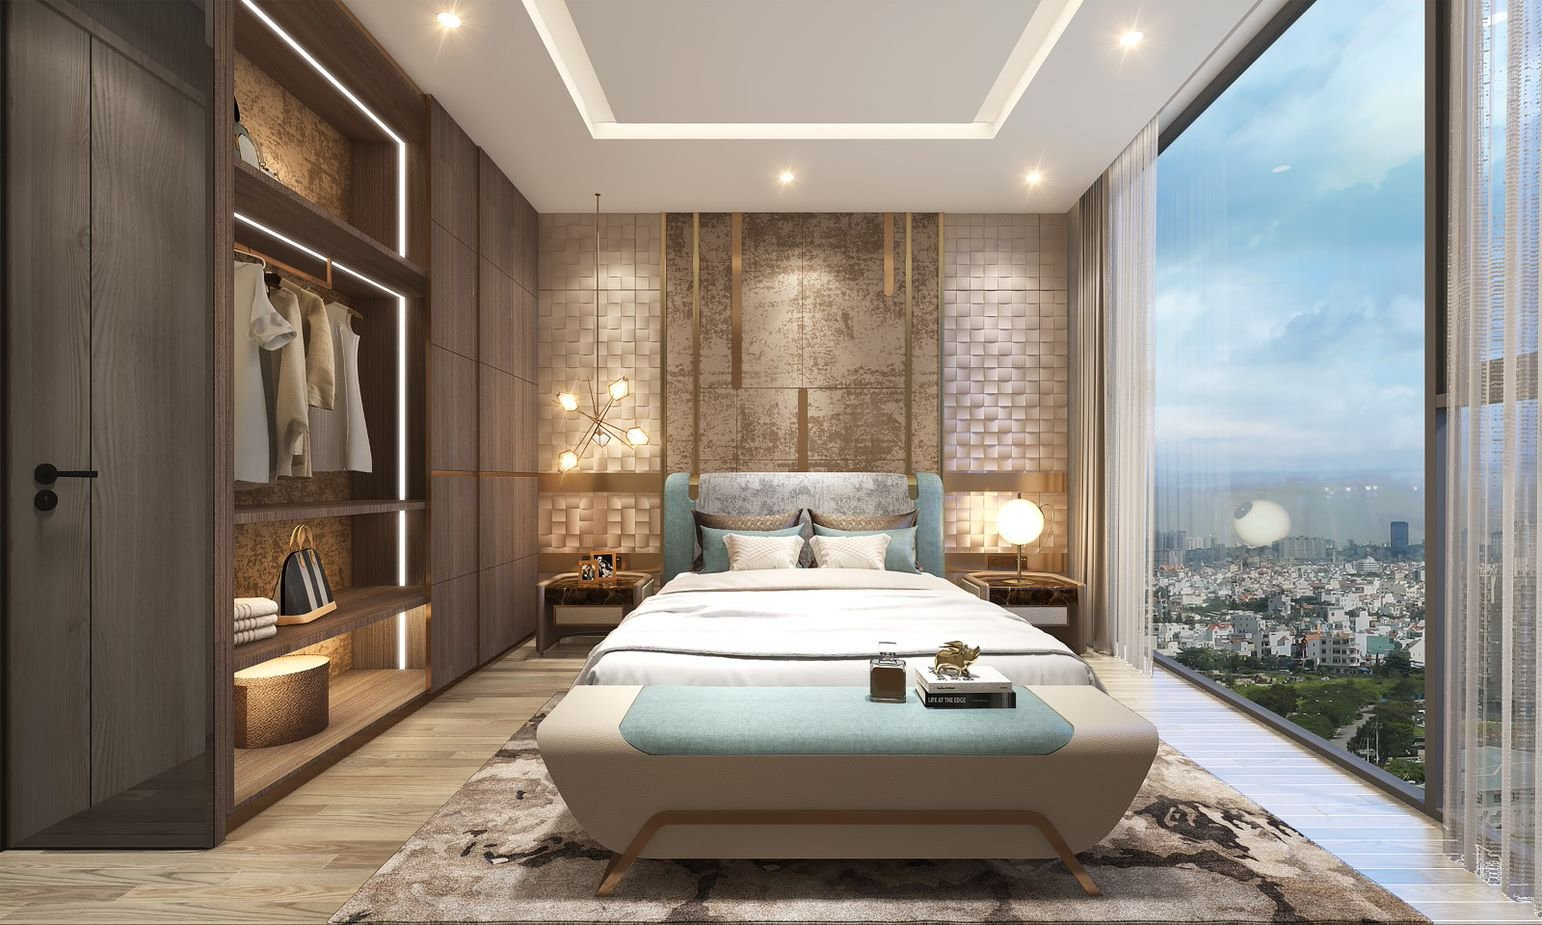 Phòng ngủ với hệ cửa kính cao rộng mang đến tầm view lý tưởng.